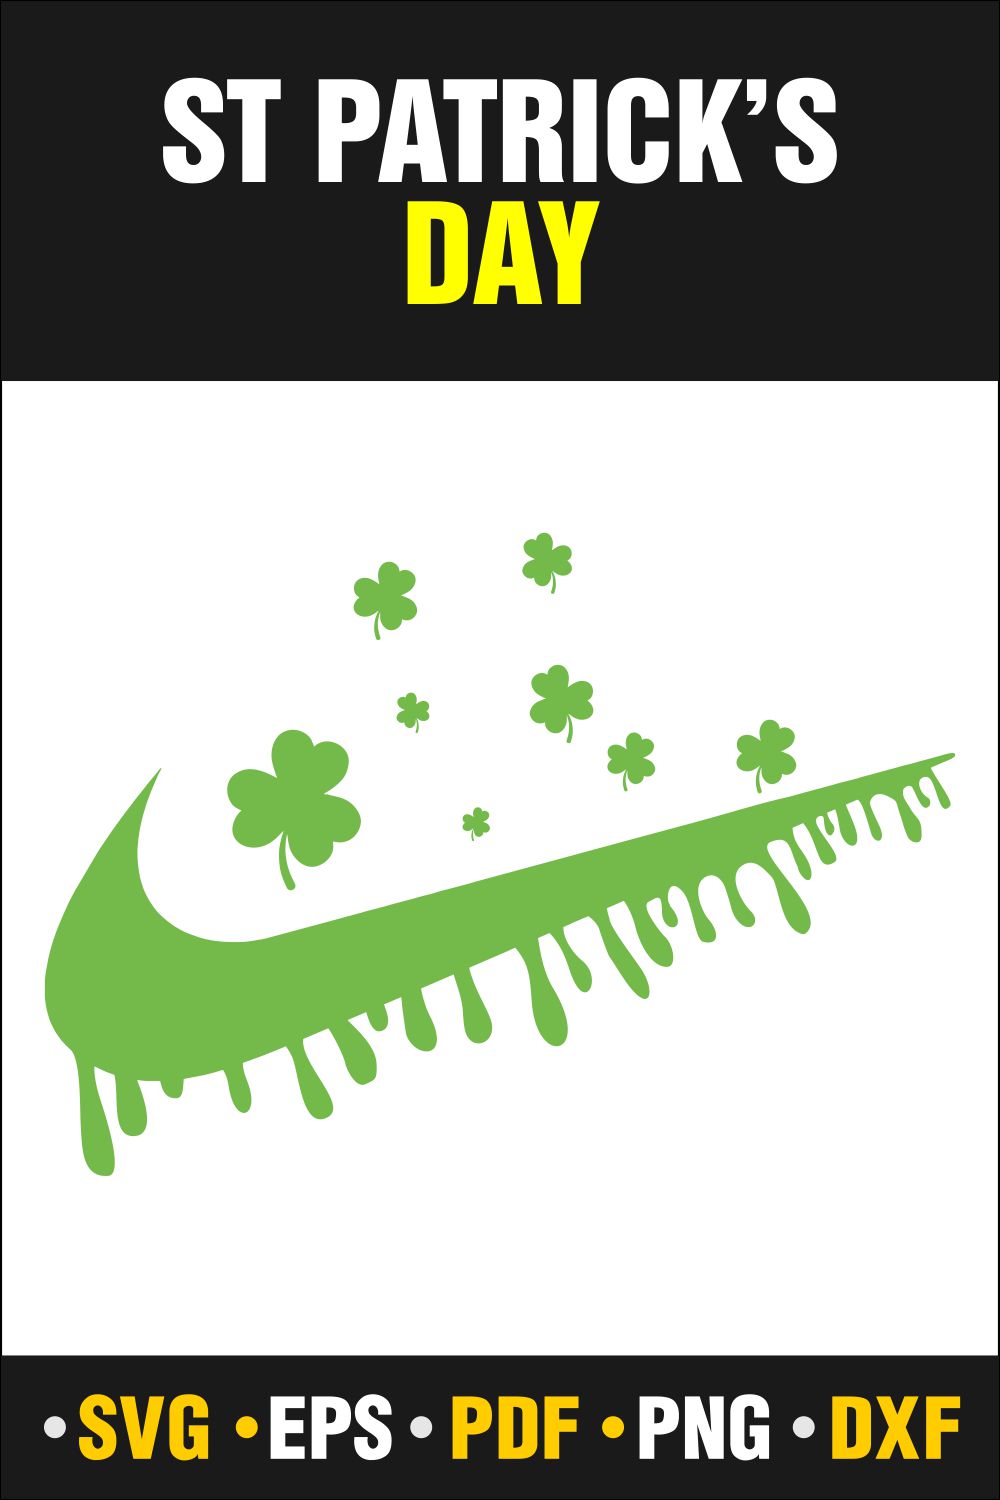 St Patrick\\\'s Day SVG Bundle, St Patrick\\\'s Dribble Nike, Lucky SVG, St Patricks Day Rainbow, Shamrock, Cut File Cricut pinterest preview image.